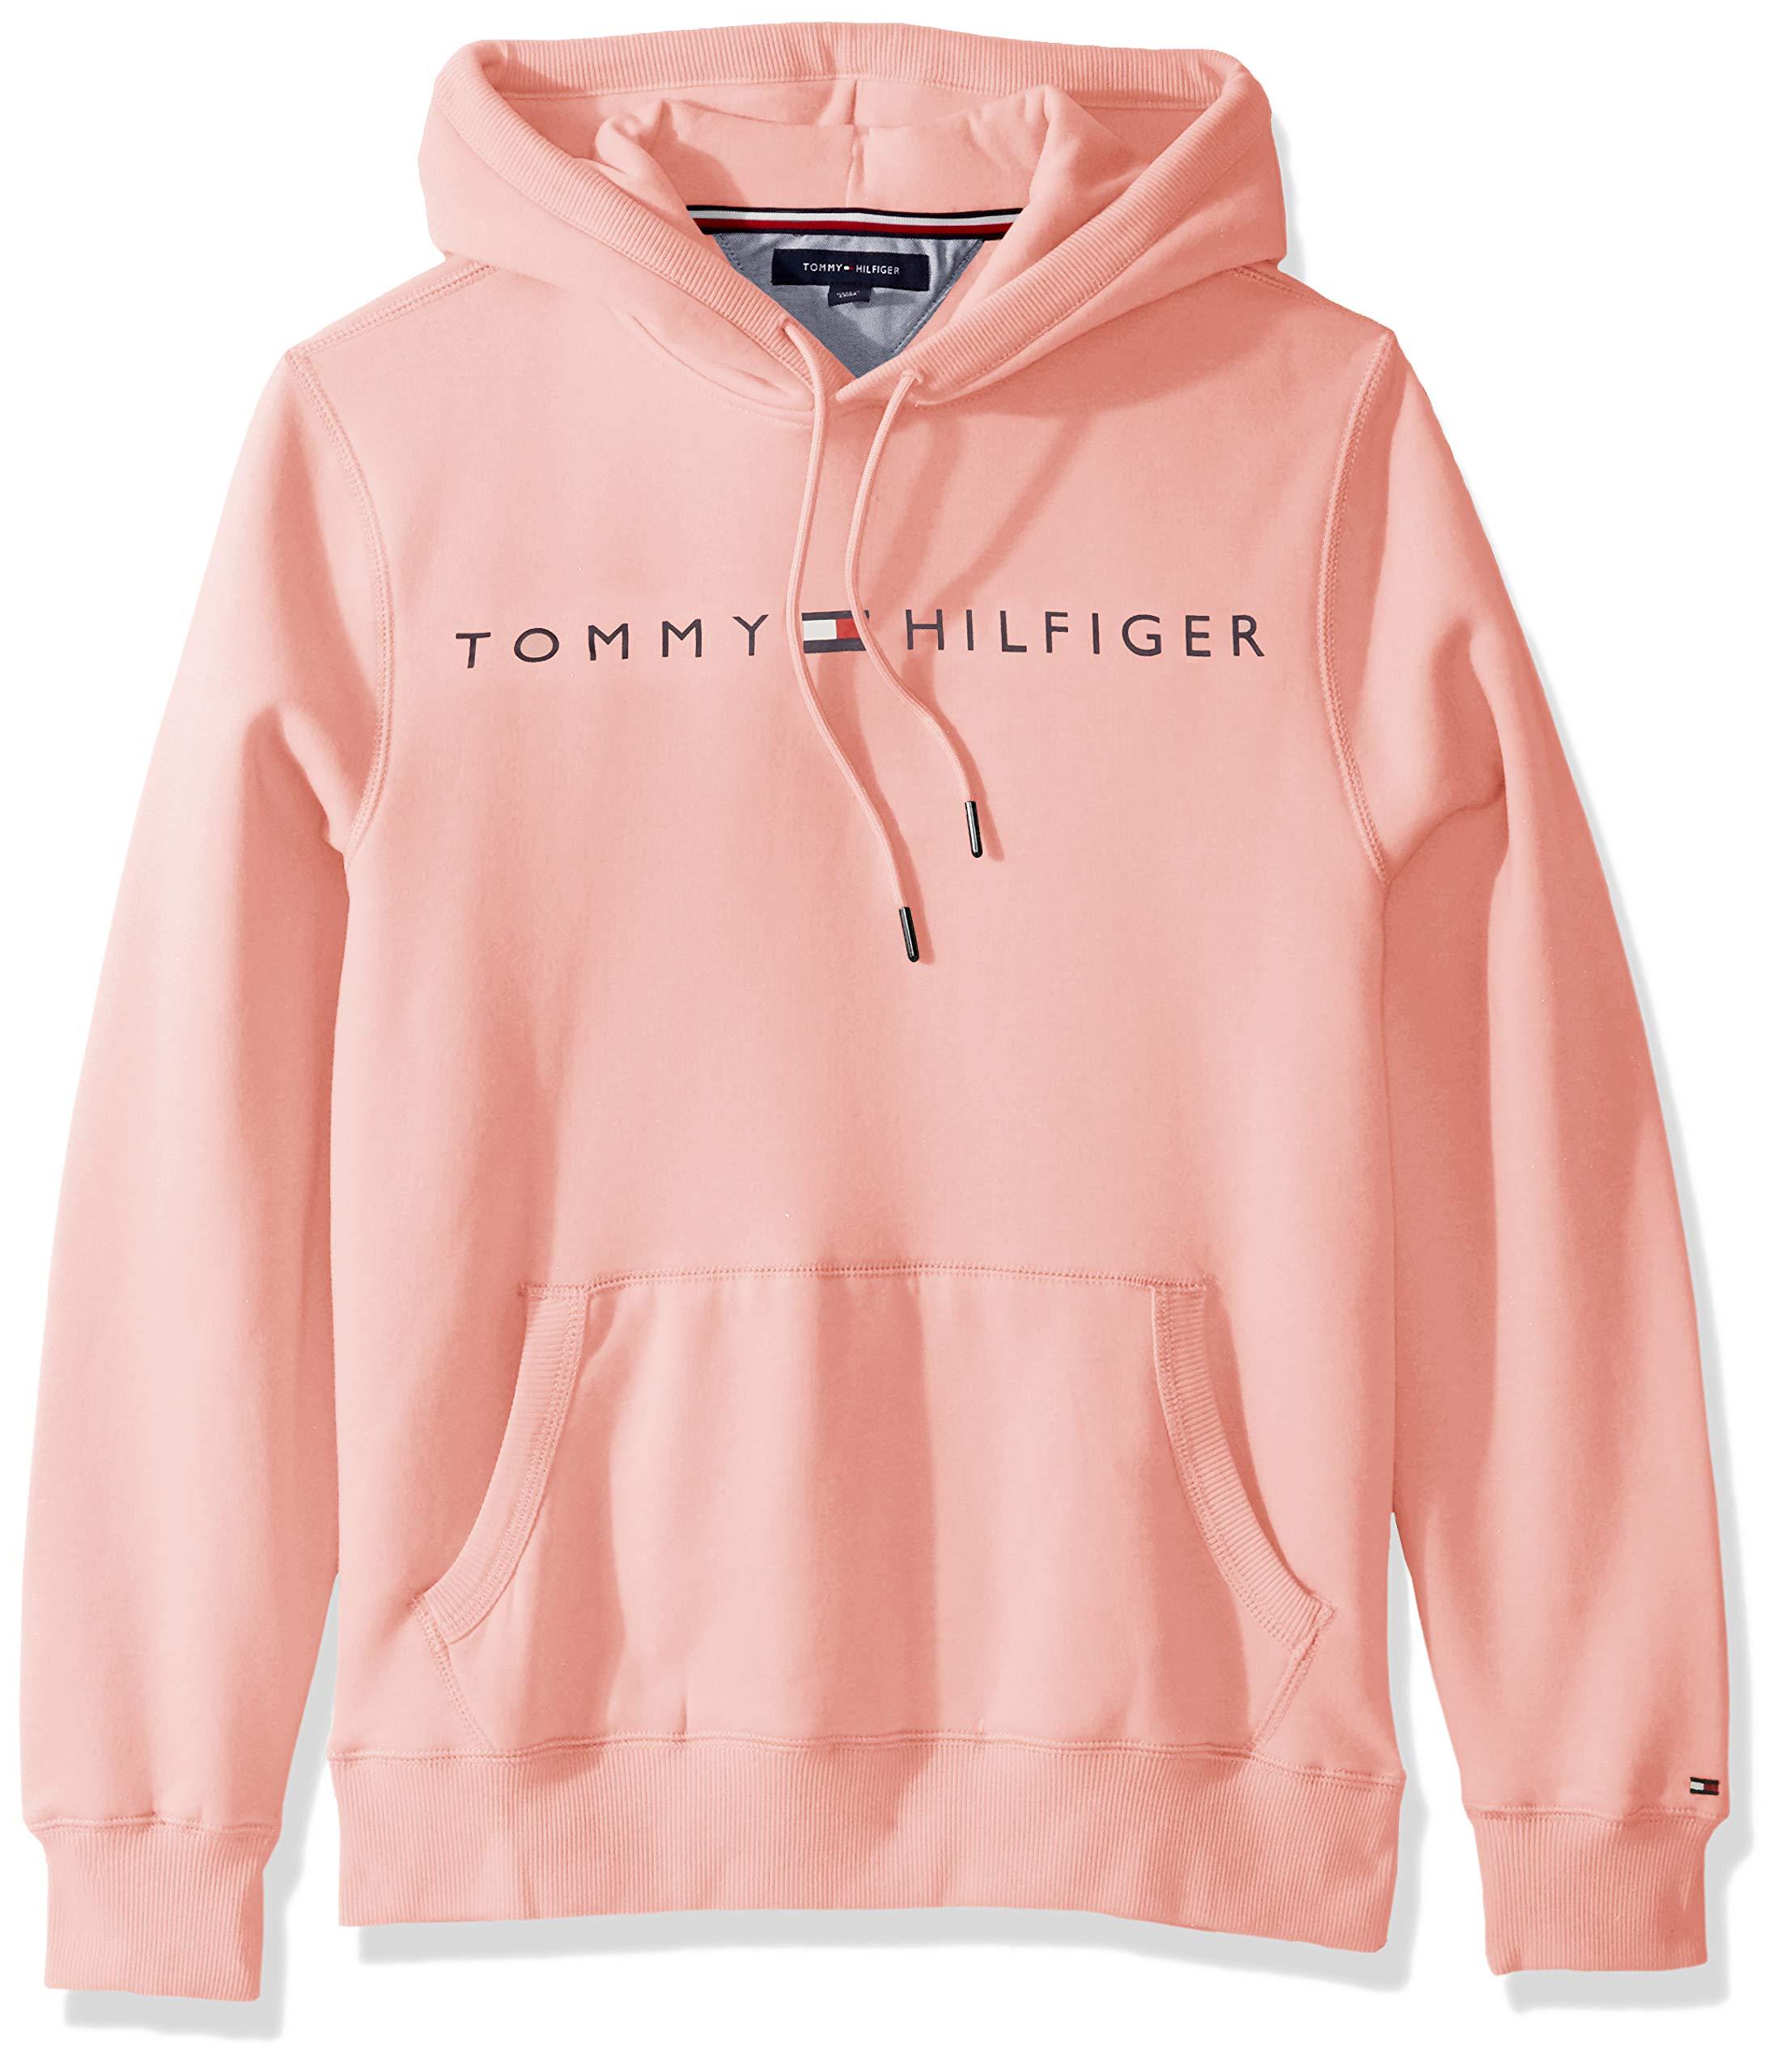 tommy hilfiger pink zip up hoodie